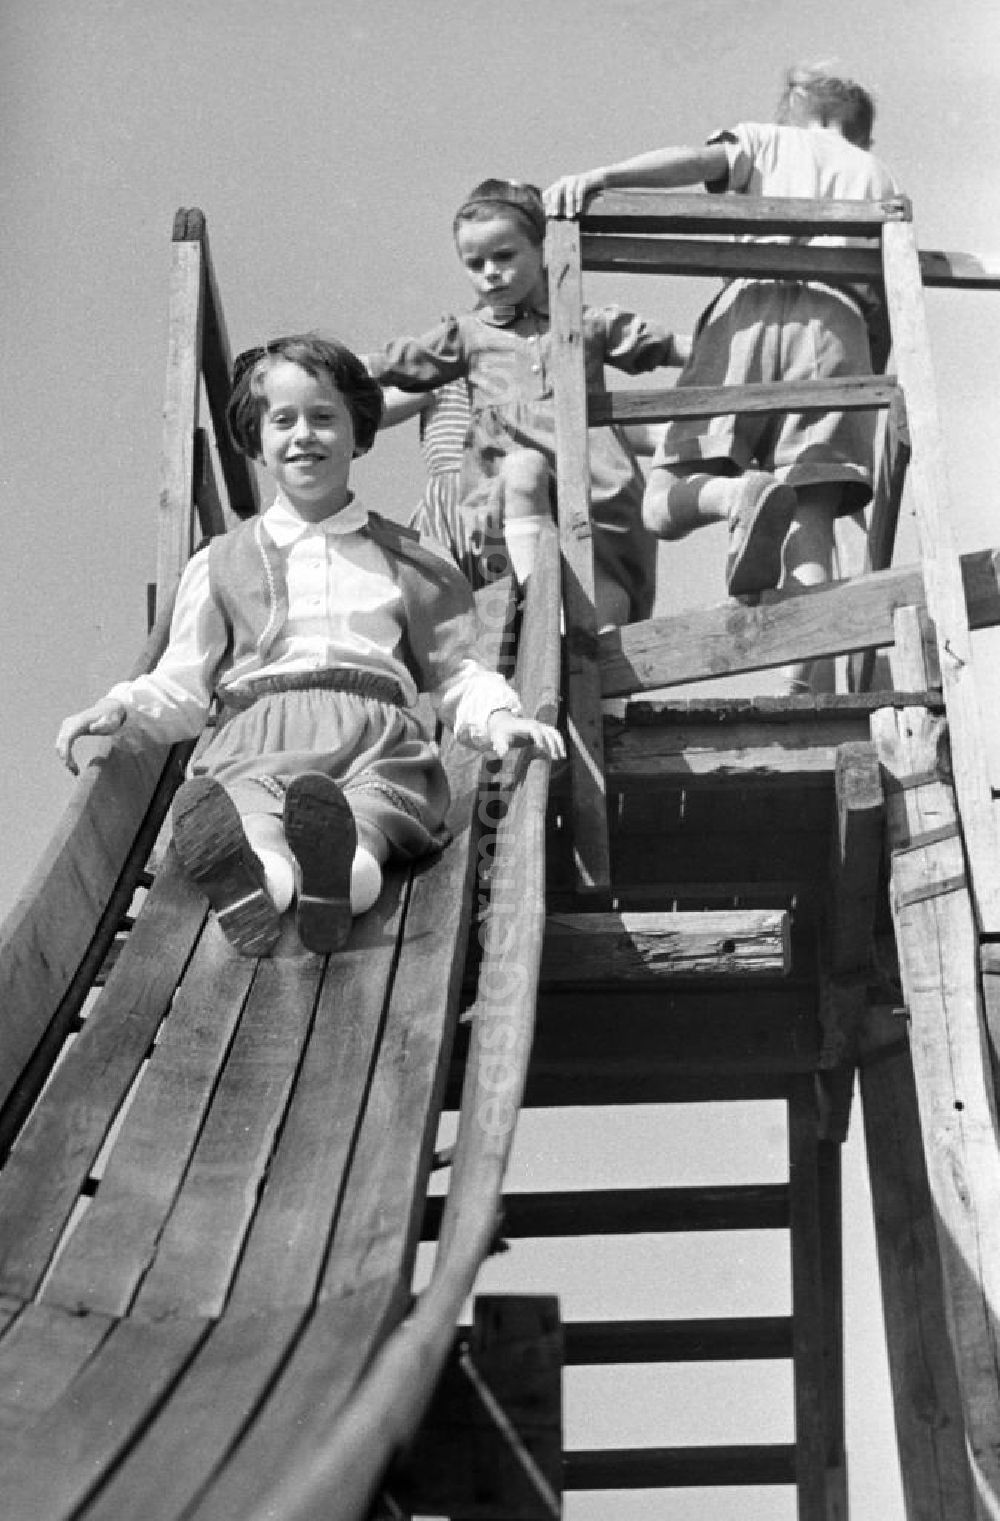 GDR photo archive: Naunhof-Ammelshain - Zur 600-Jahrfeier in Ammelshain bei Leipzig vergnügen sich die Kinder auf einer Holzrutsche. Eigentlich 135